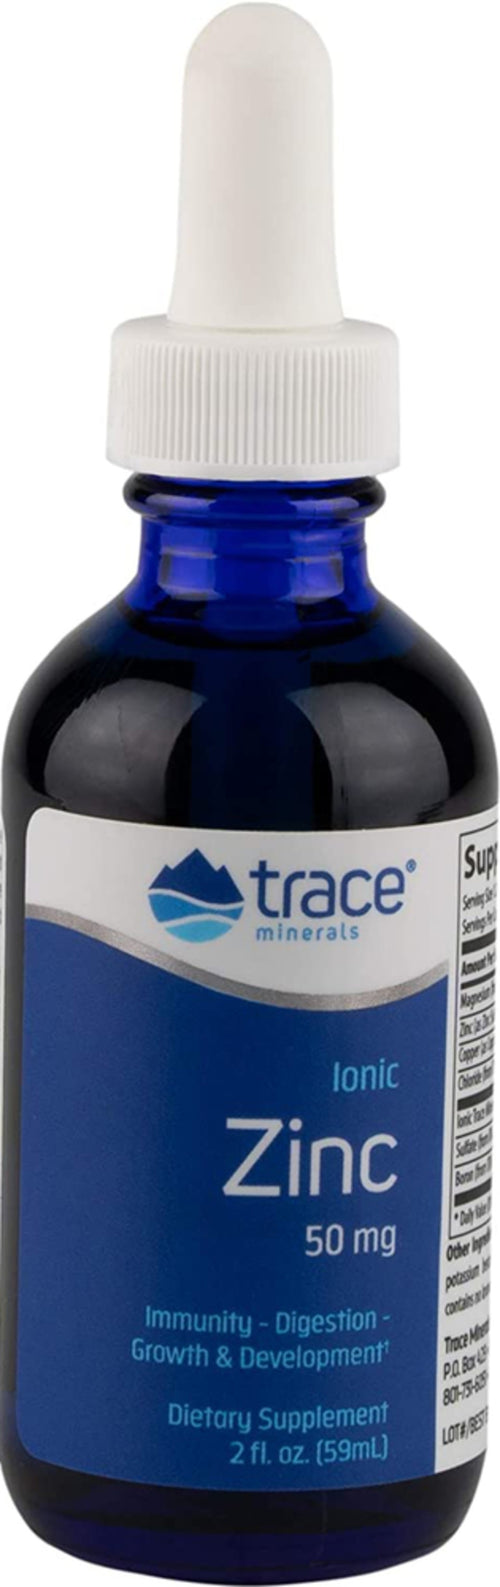 Ionic Zinc Liquid (водный раствор солей цинка) 50 мг 2 Жидкая Унция  59 мл Флакон  